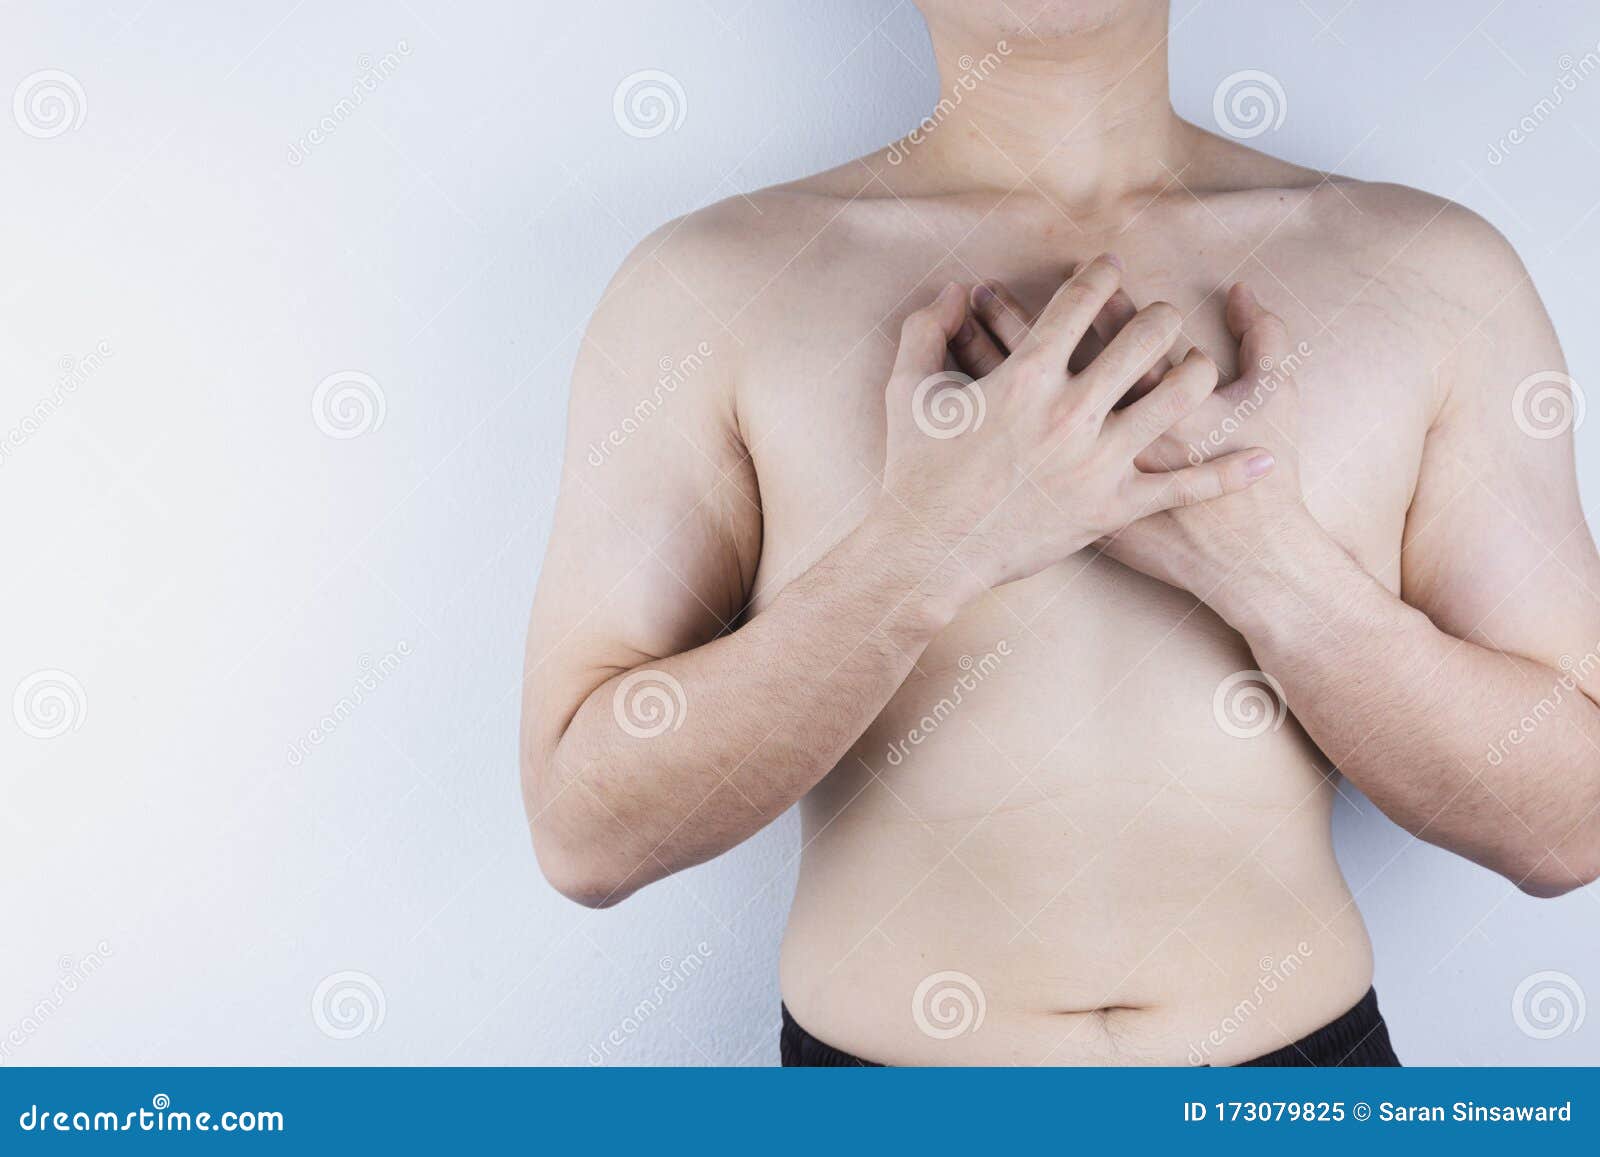 Молочной железы у мужчин симптомы. Разрастание молочных желез у мужчин фото.